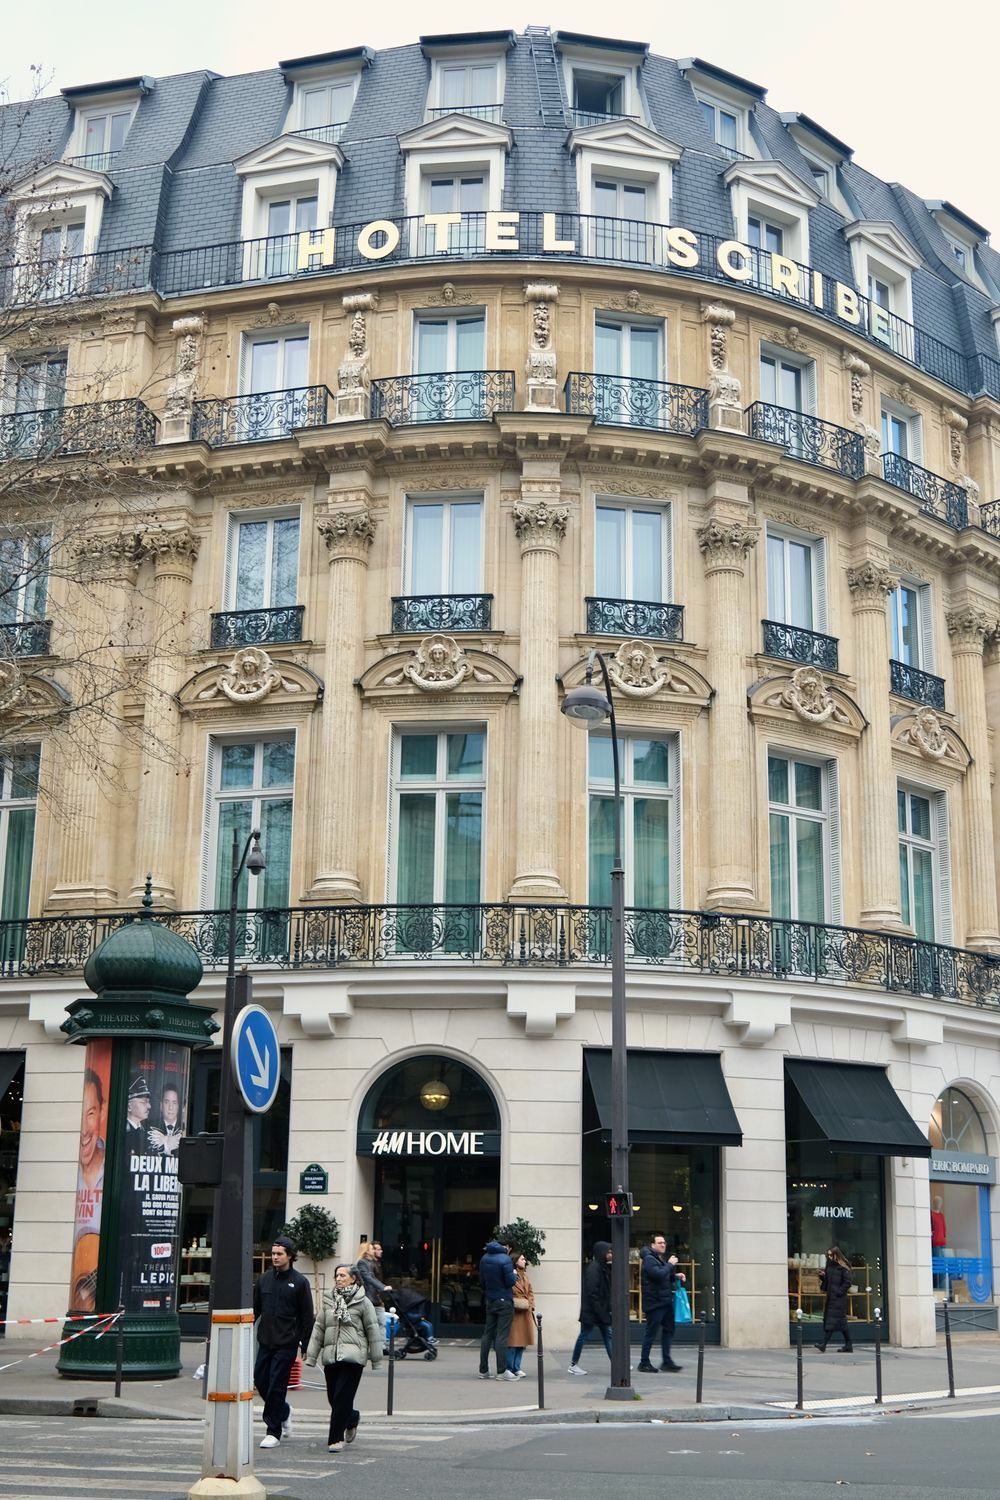 Hotels in Paris near Louvre DSCF2141